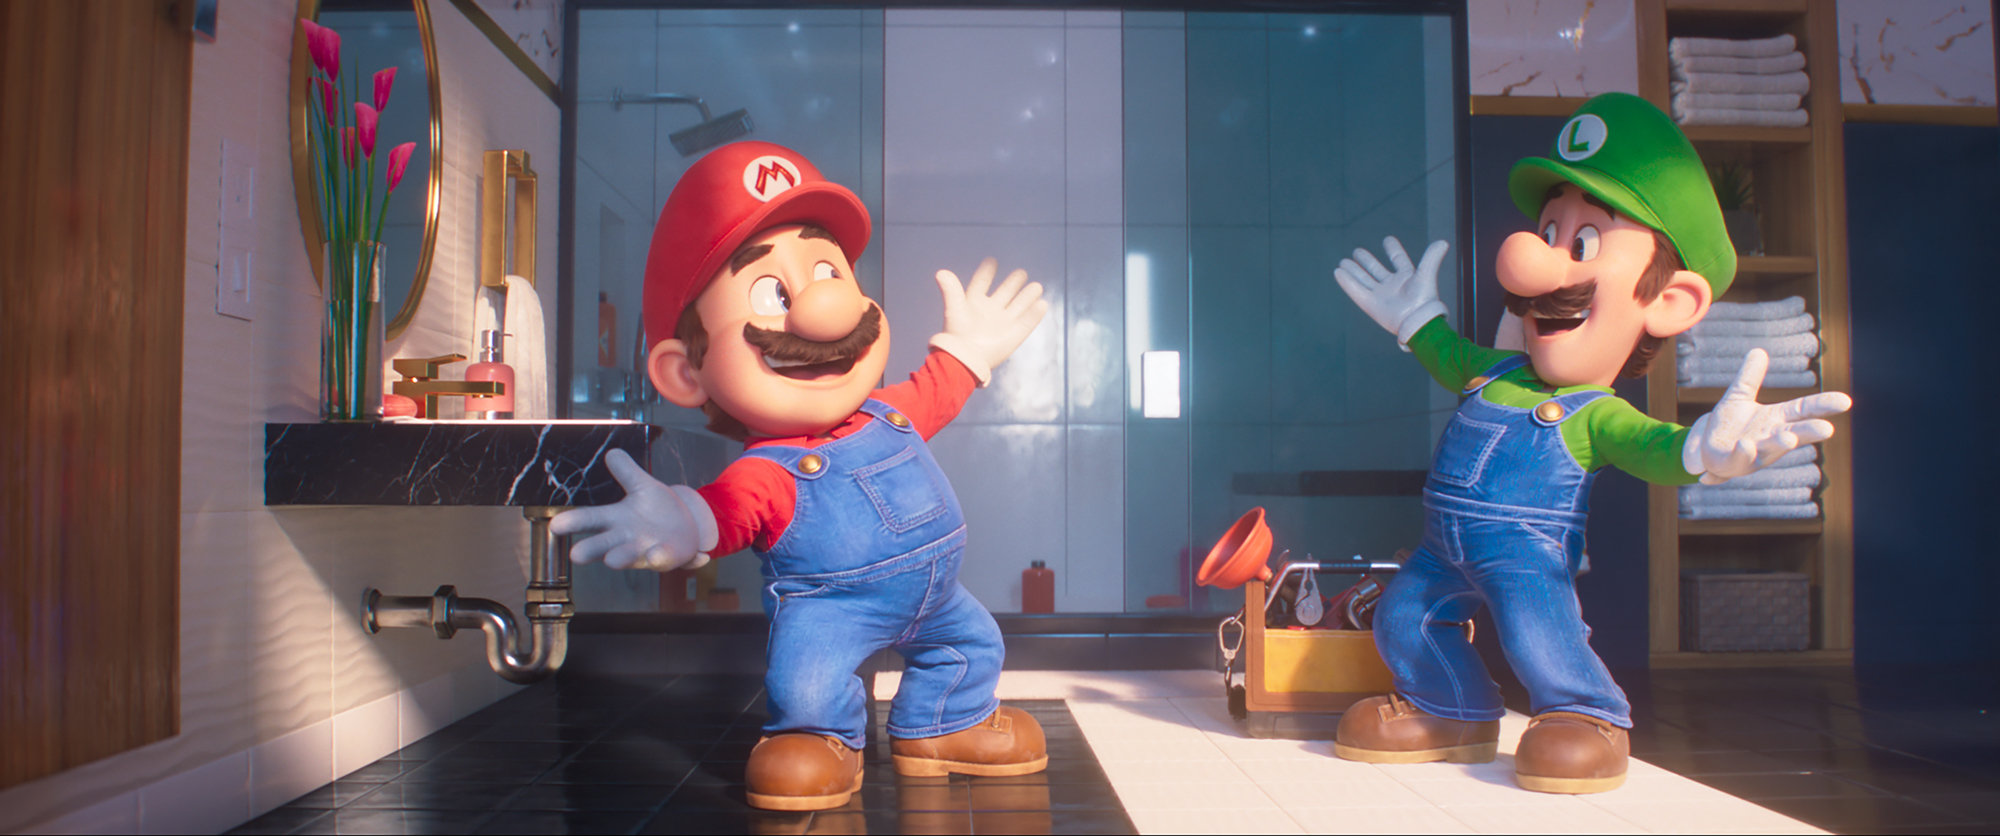 Super Mario Bros: La Película